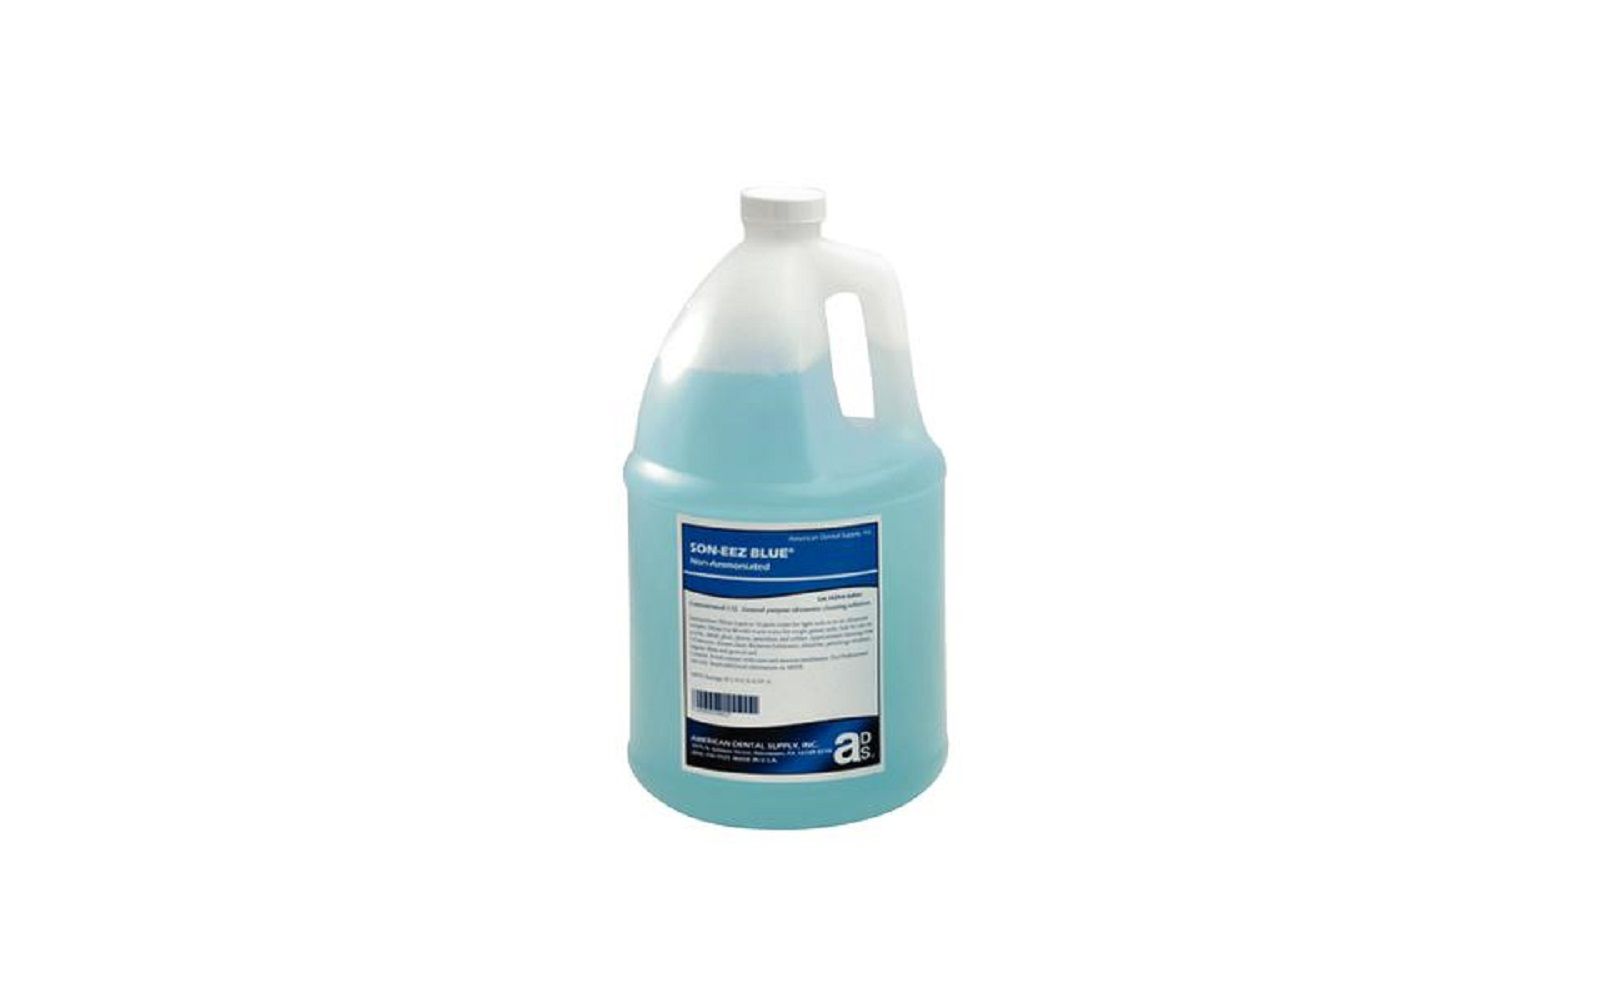 Son-eez blue - 1 gallon bottle